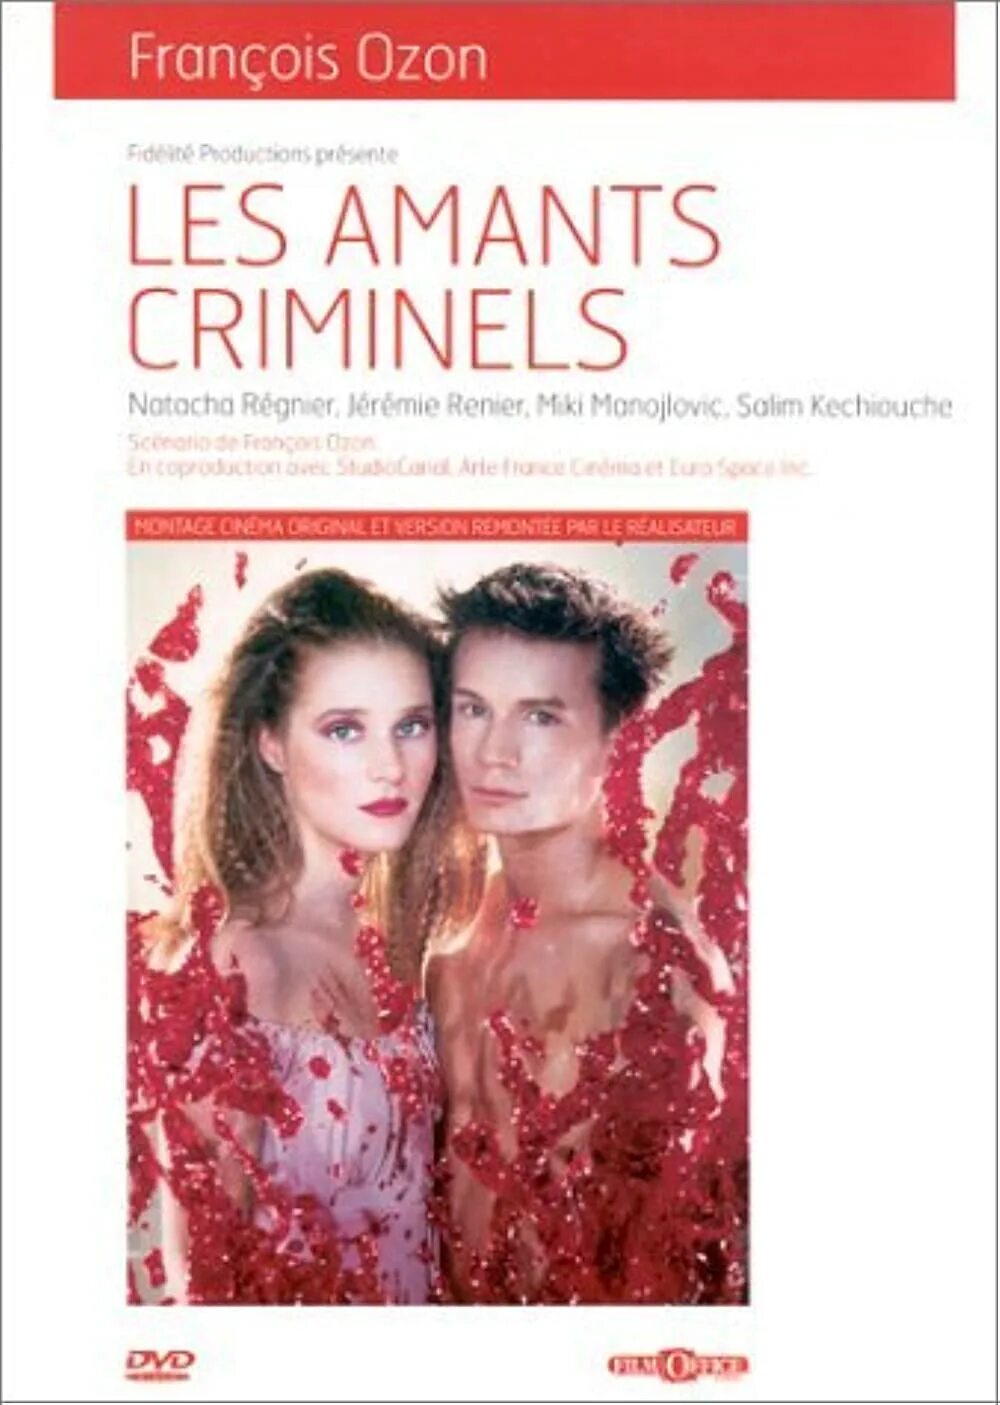 Криминальные любовники(1999) les amants Criminels. «Любовники» (les amants) постеры. Франсуа озона «криминальные любовники» рецензия. Криминальные любовники